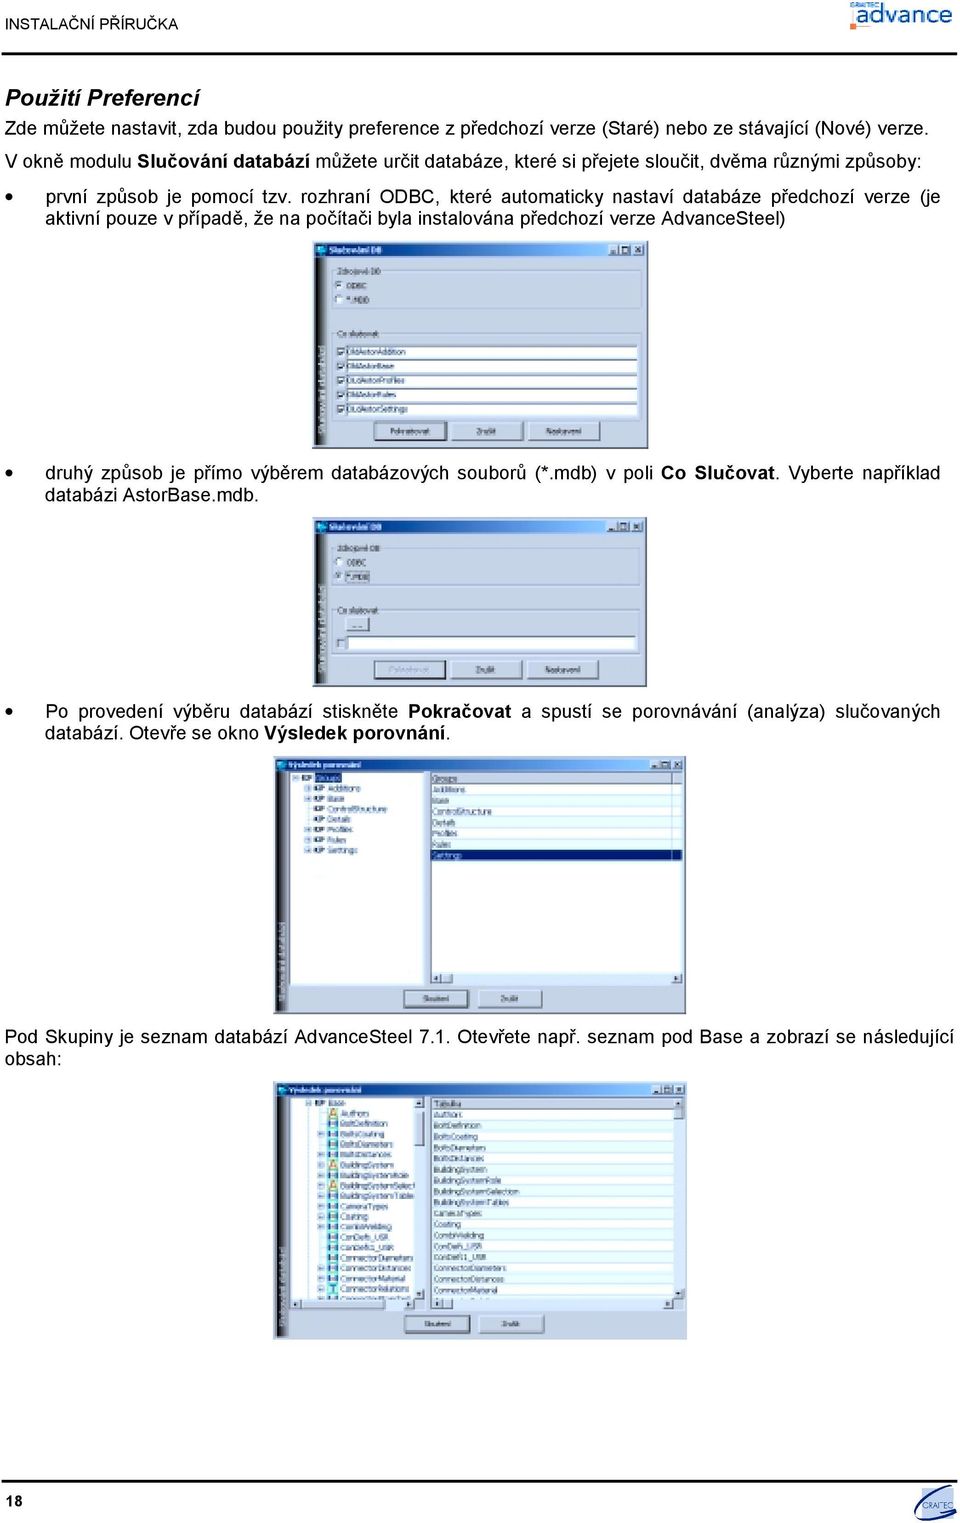 rozhraní ODBC, které automaticky nastaví databáze předchozí verze (je aktivní pouze v případě, že na počítači byla instalována předchozí verze AdvanceSteel) druhý způsob je přímo výběrem